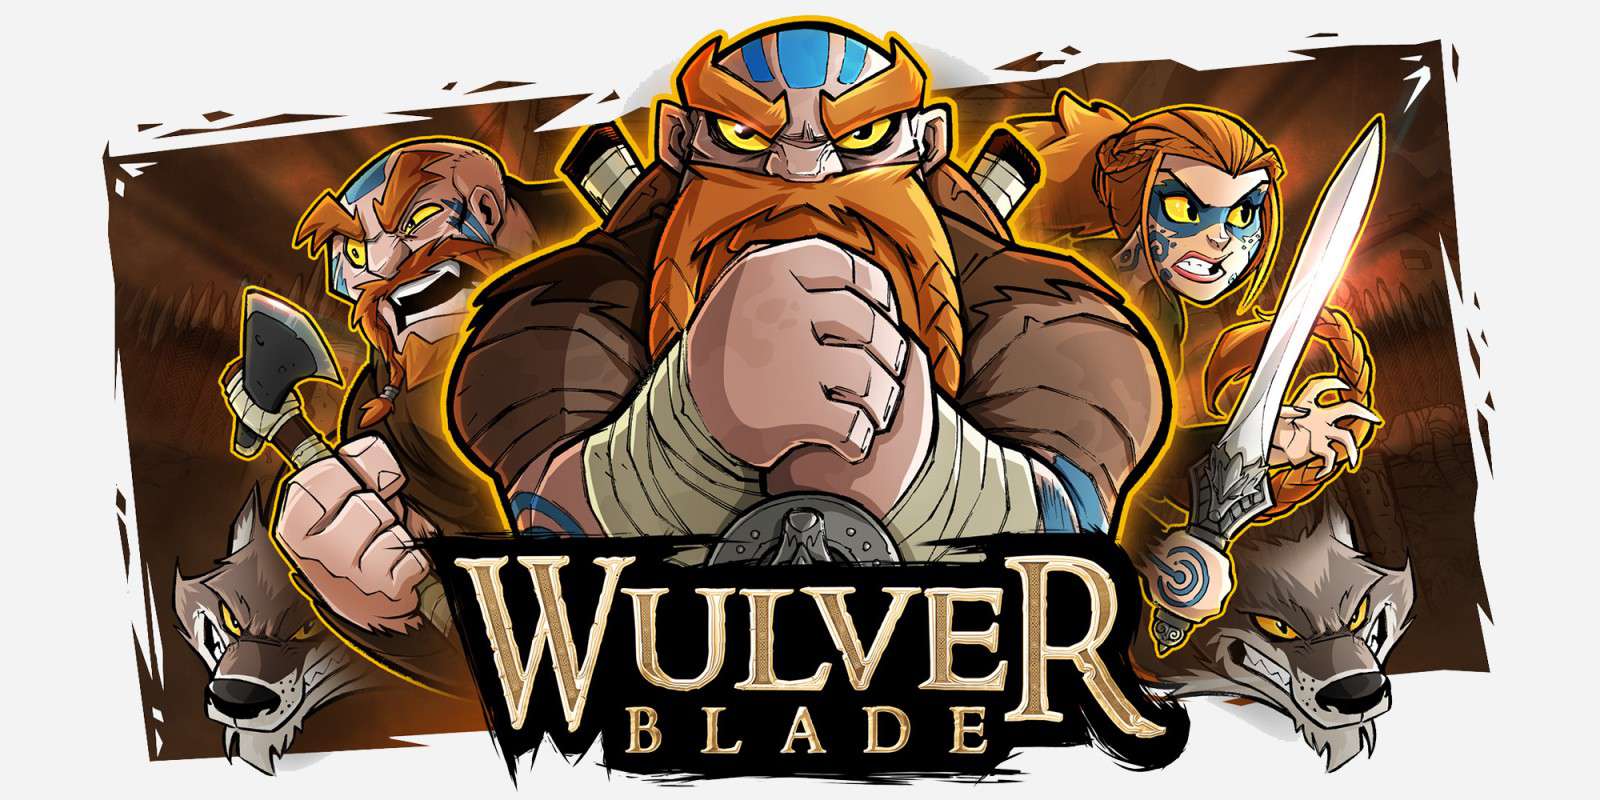 Wulverblade - recenzja gry. Golden Axe XXI wieku